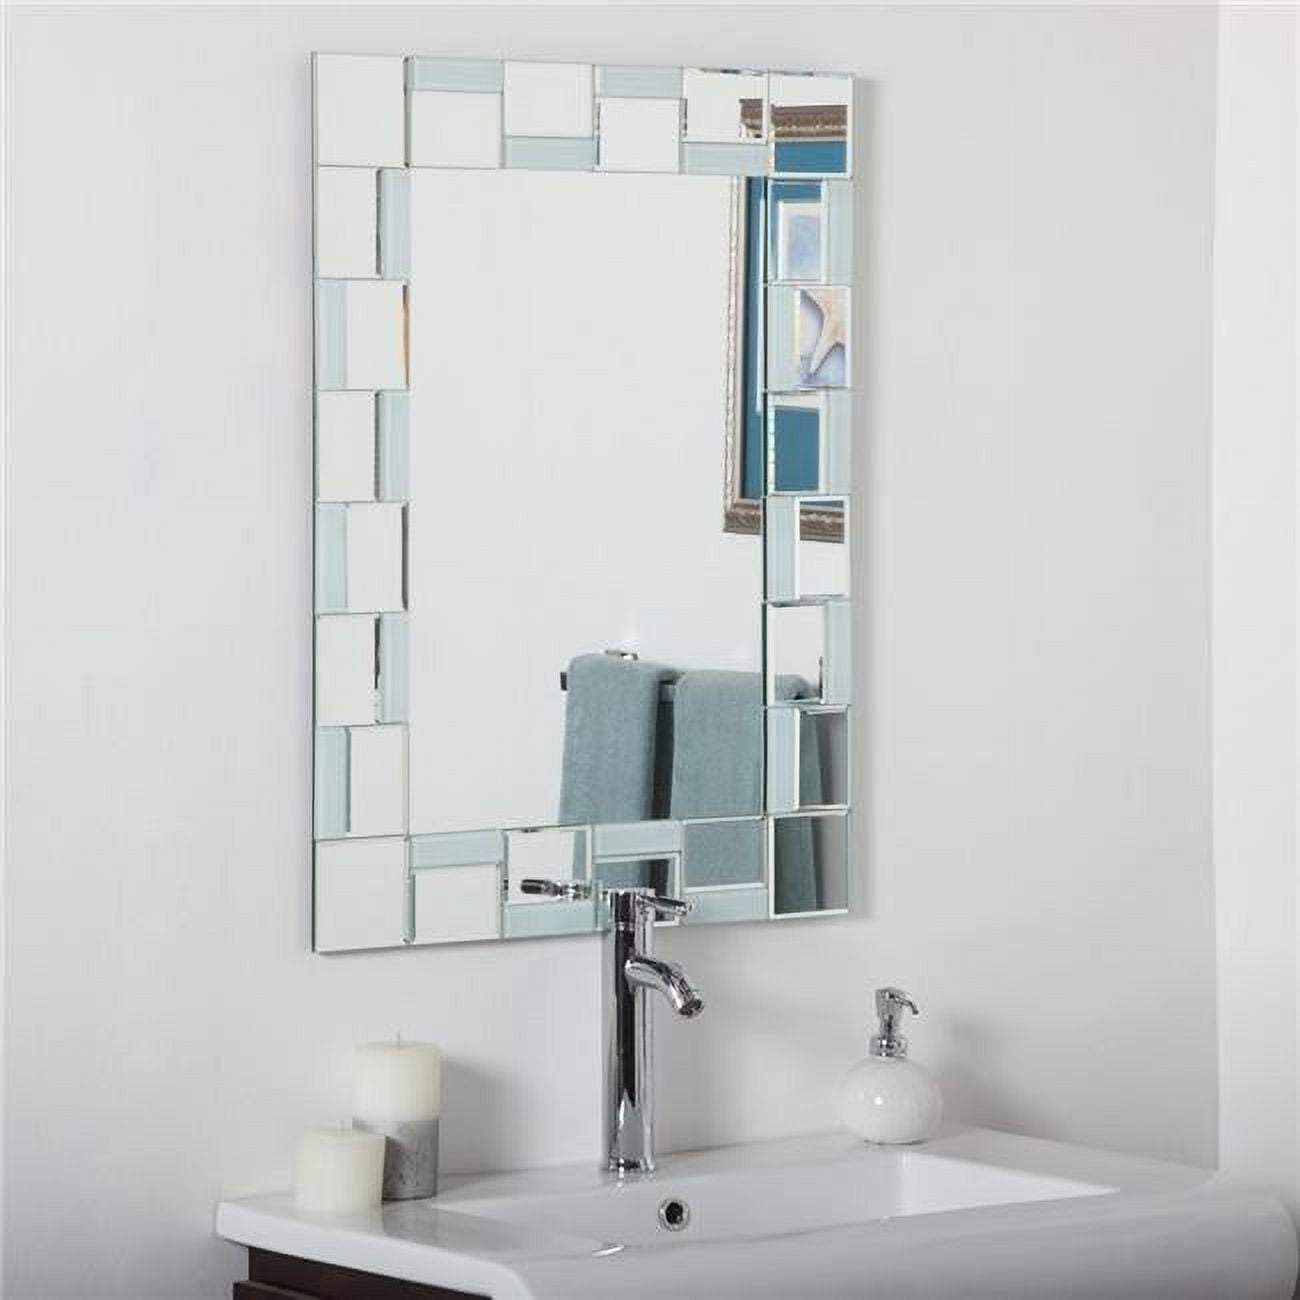 Picture of Decor Wonderland SSM310710 Quebec Modern Bathroom Mirror - Silver